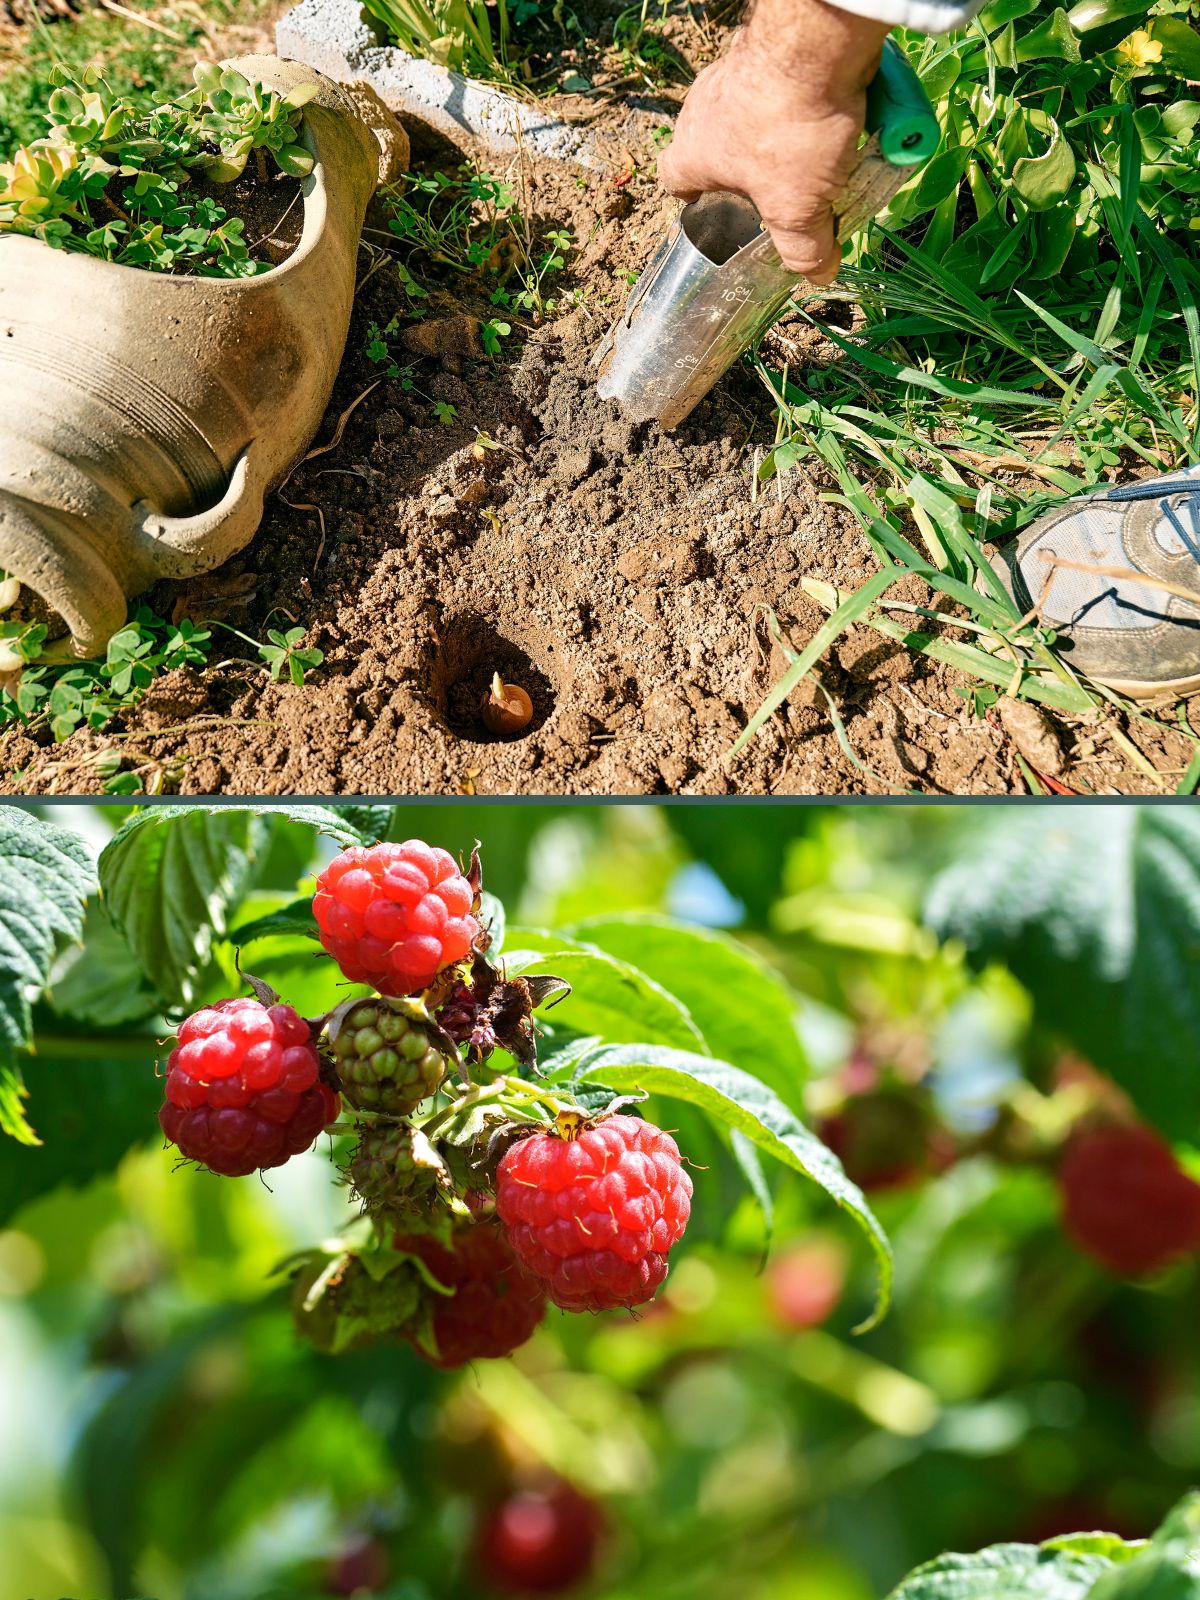 Planter des bulbes ou arbres fruitiers